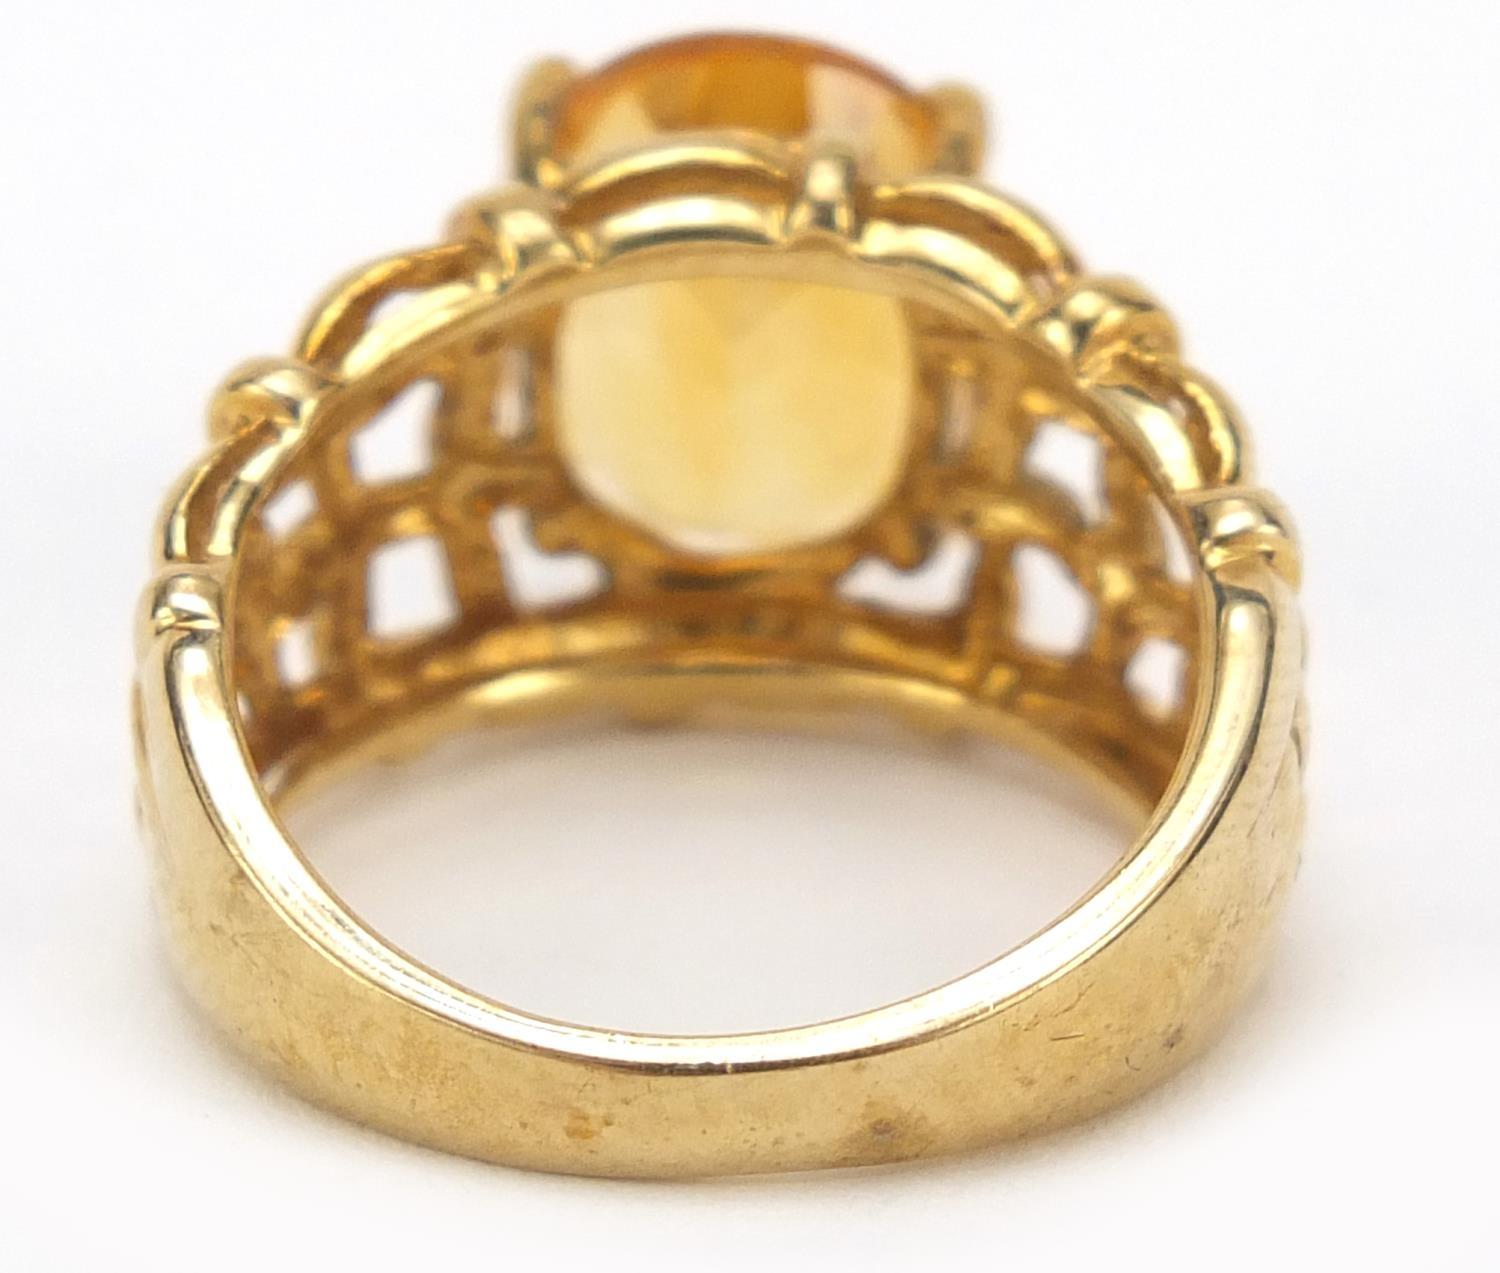 9ct gold orange stone weave design ring, size O, 5.5g - Image 3 of 5